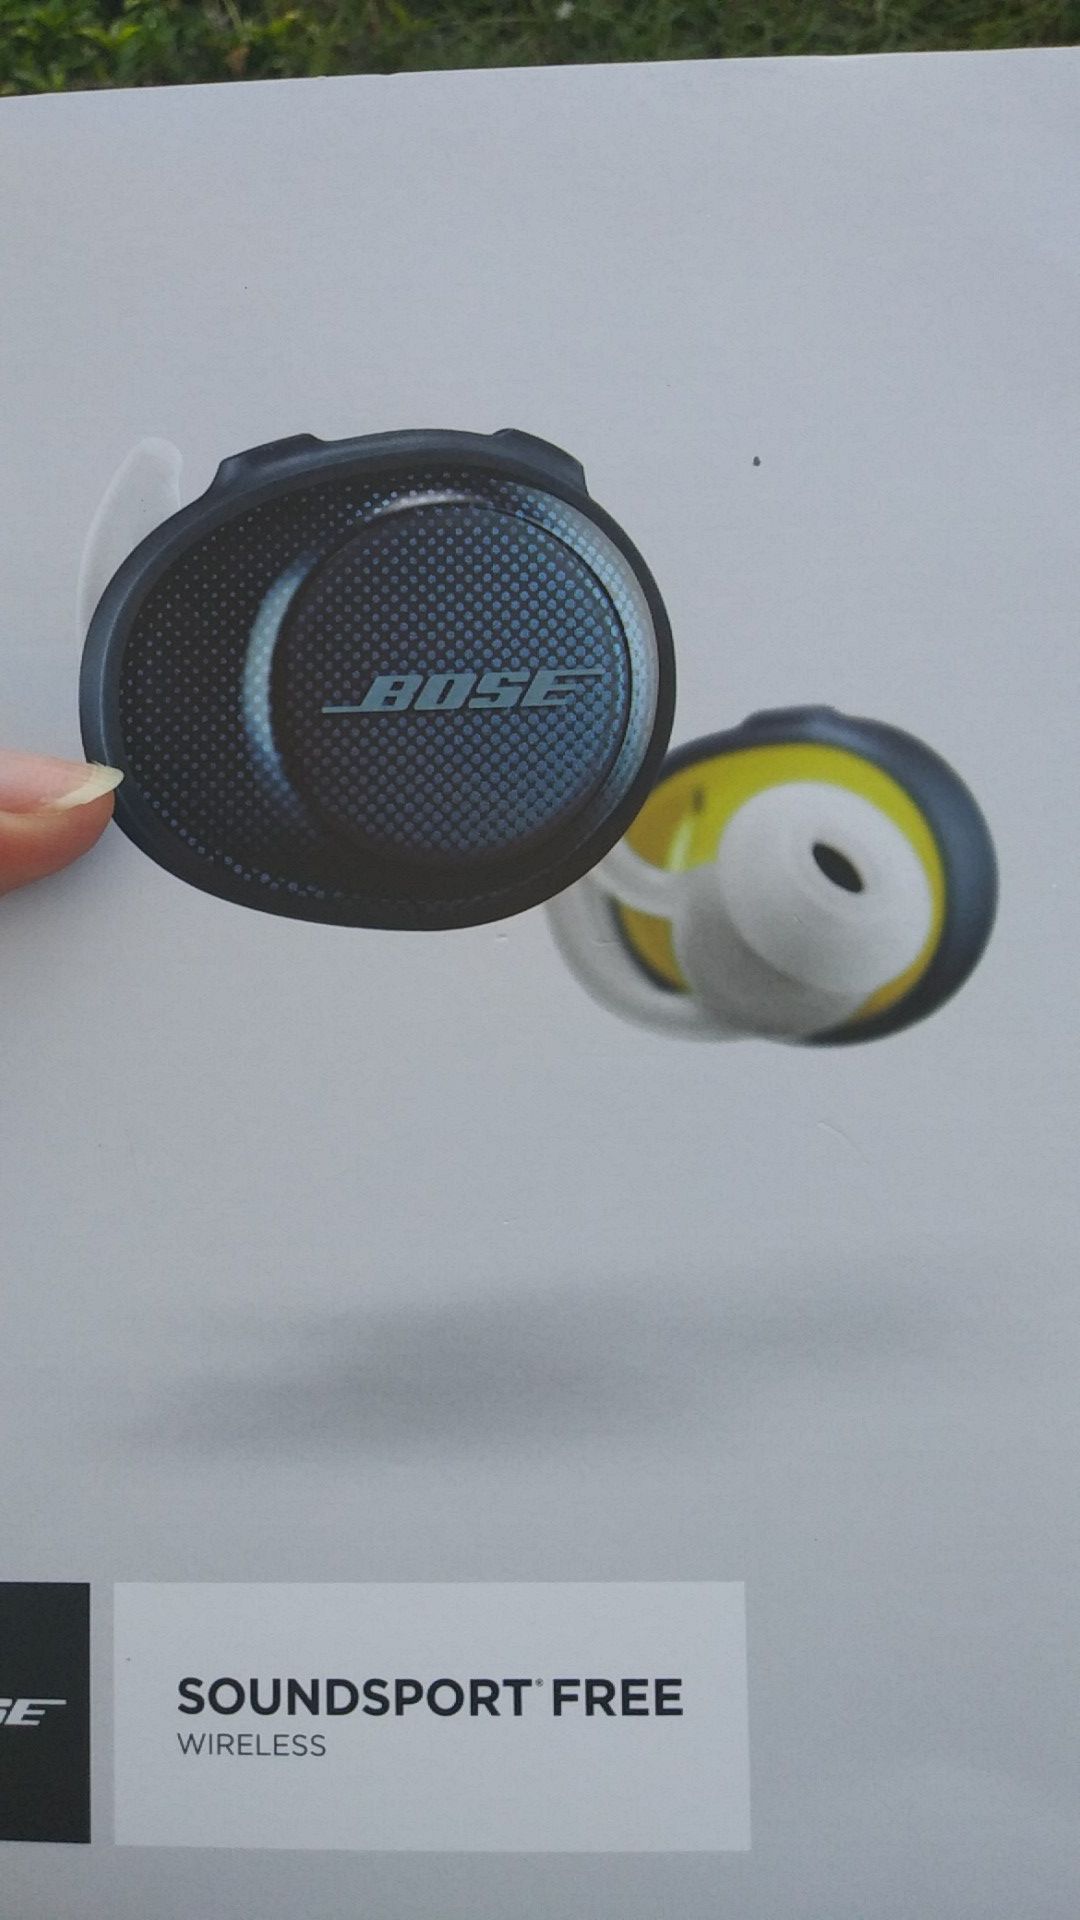 Bose wireless earbuds